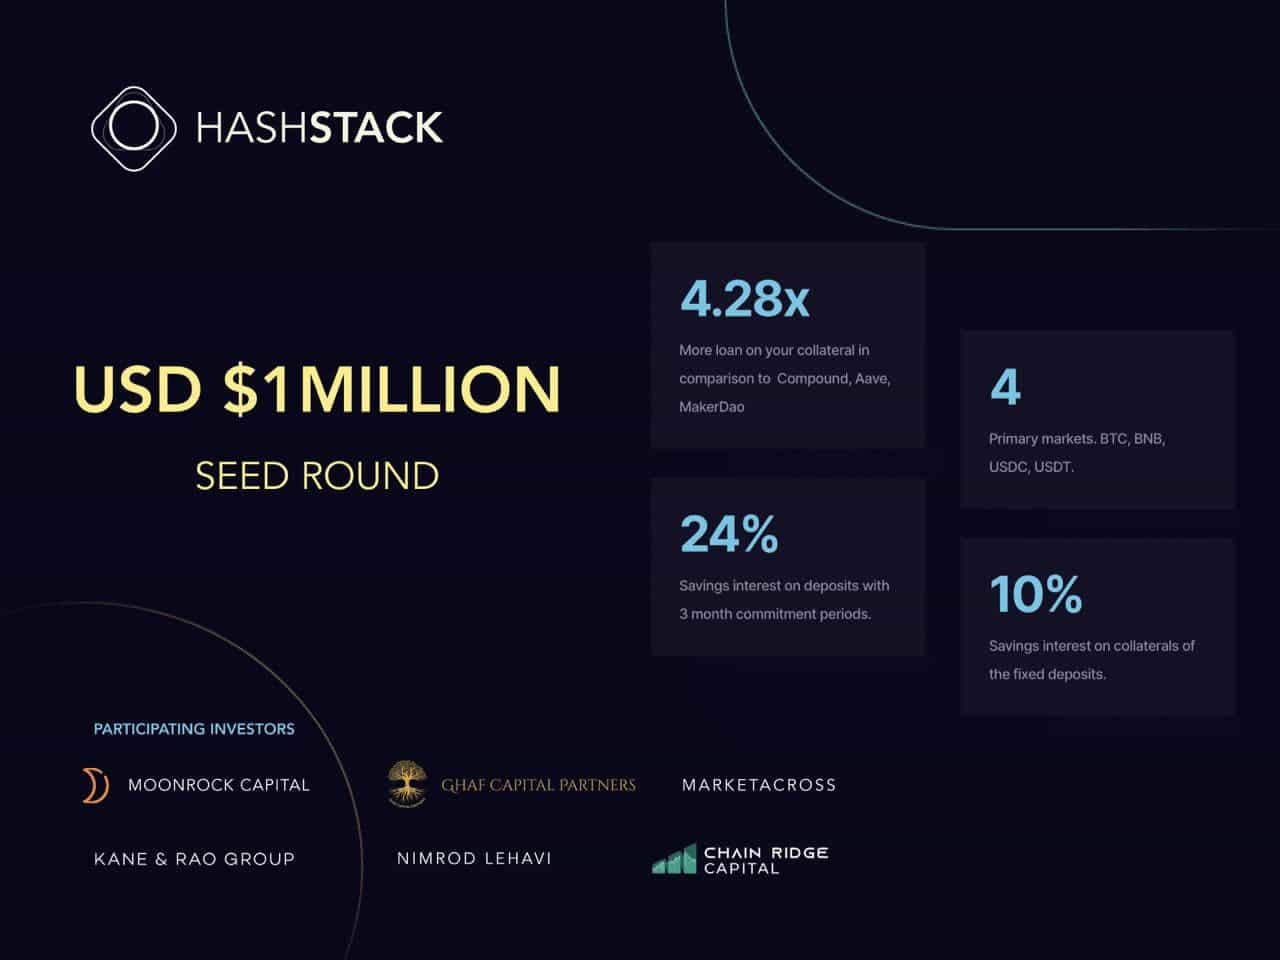 Hashstack sichert sich eine Seed-Finanzierung in Höhe von 1 Mio. USD, um unterbesicherte Kredite an DeFi zu bringen